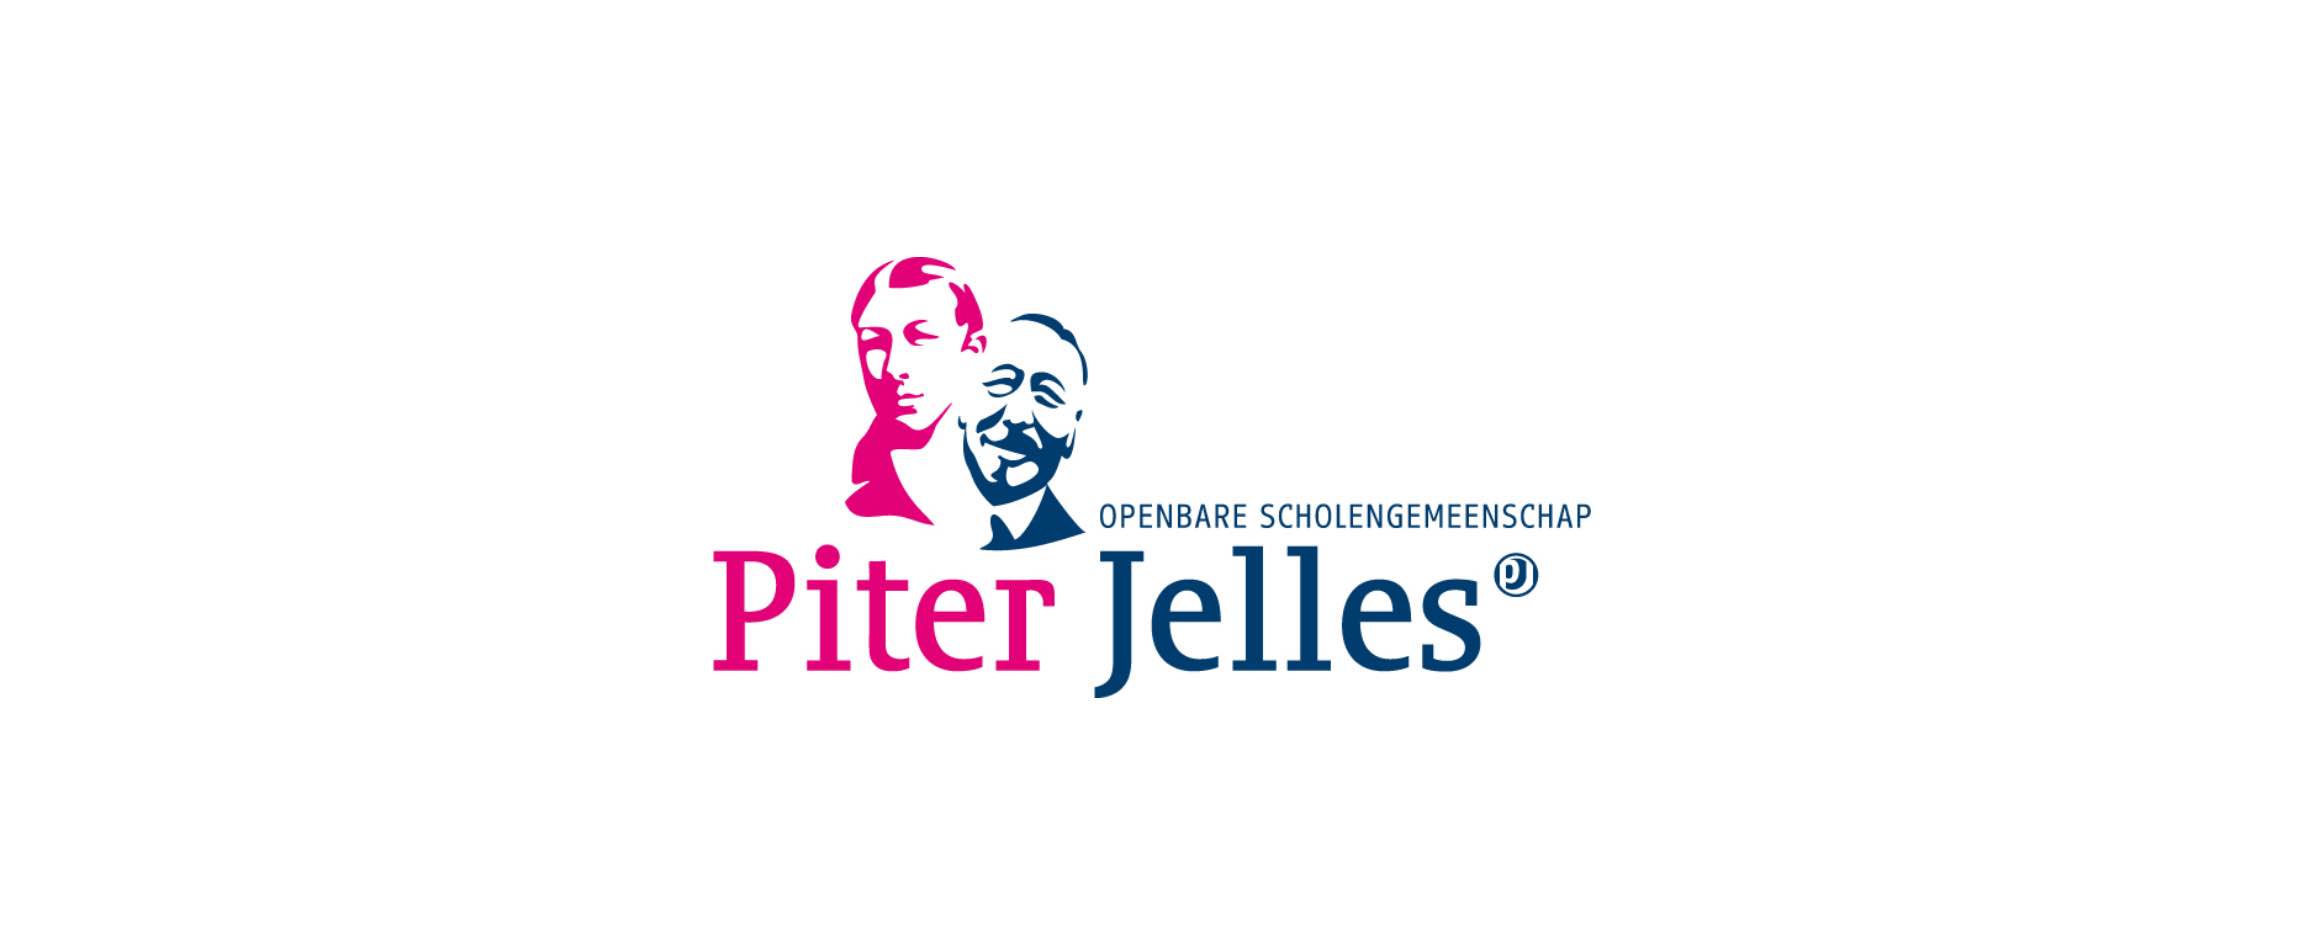 Merkidentiteit en positionering scholengemeenschap Piter Jelles